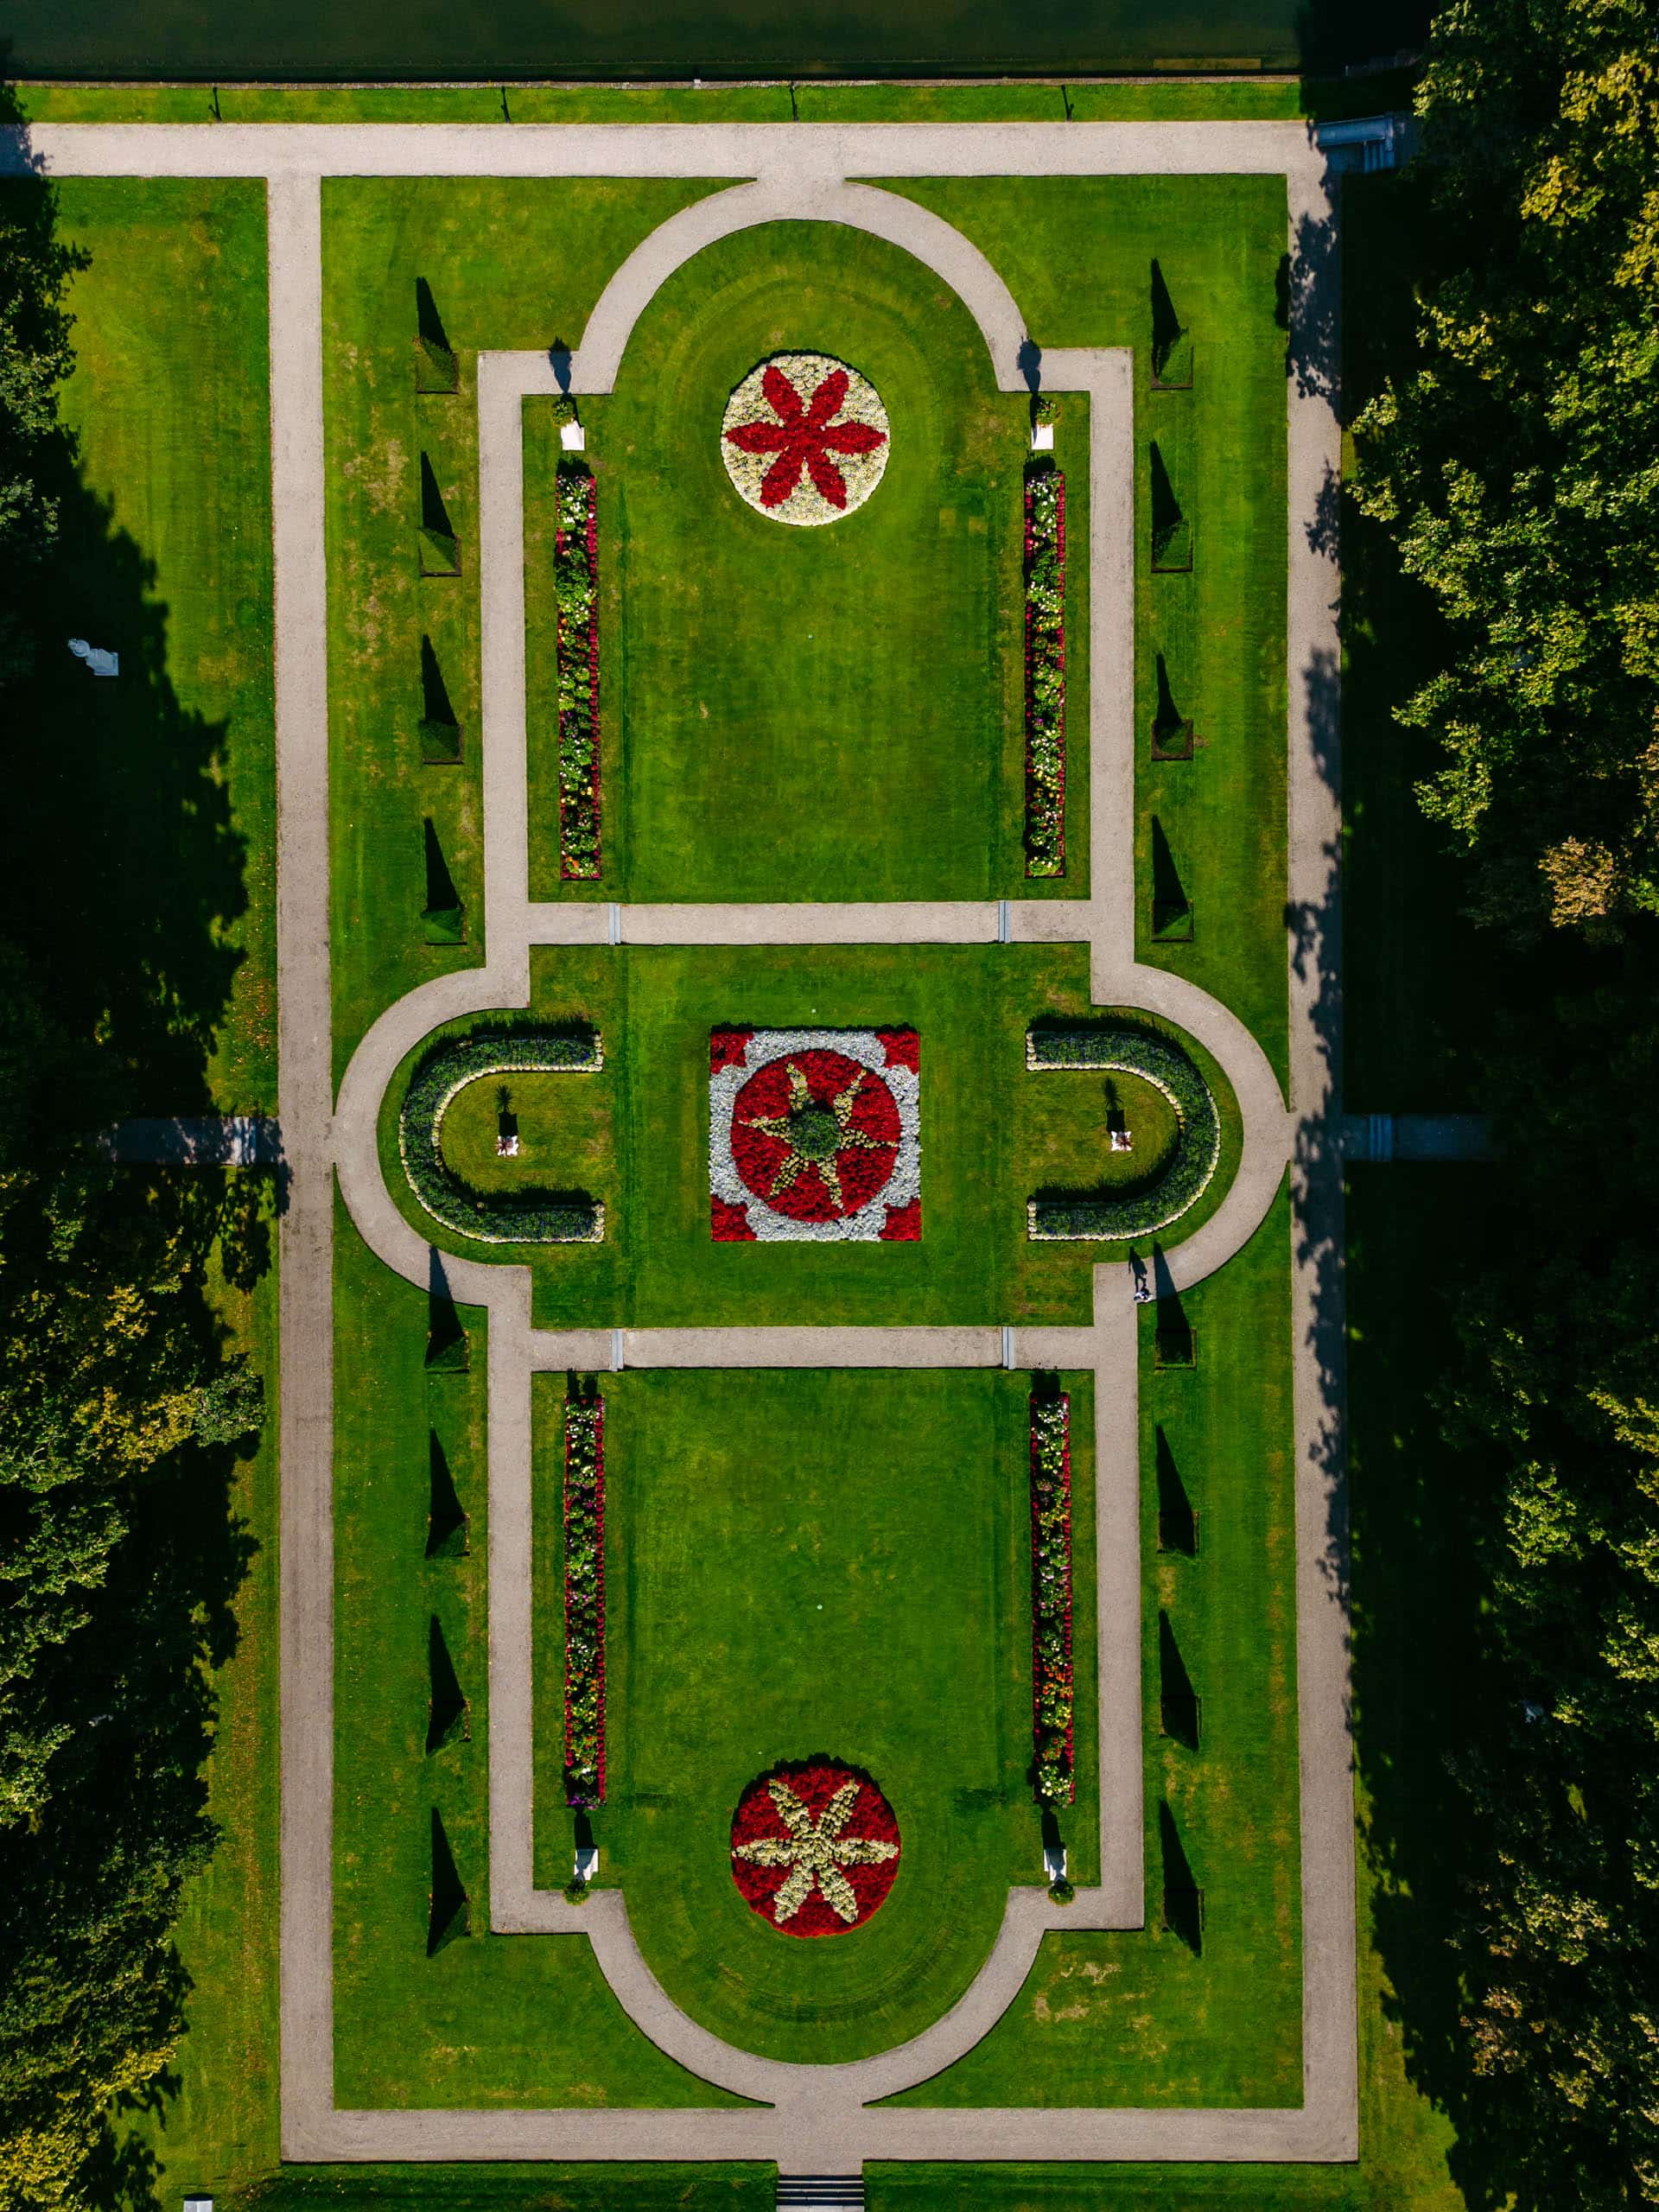 Aerial view of Castle de haar in a park.